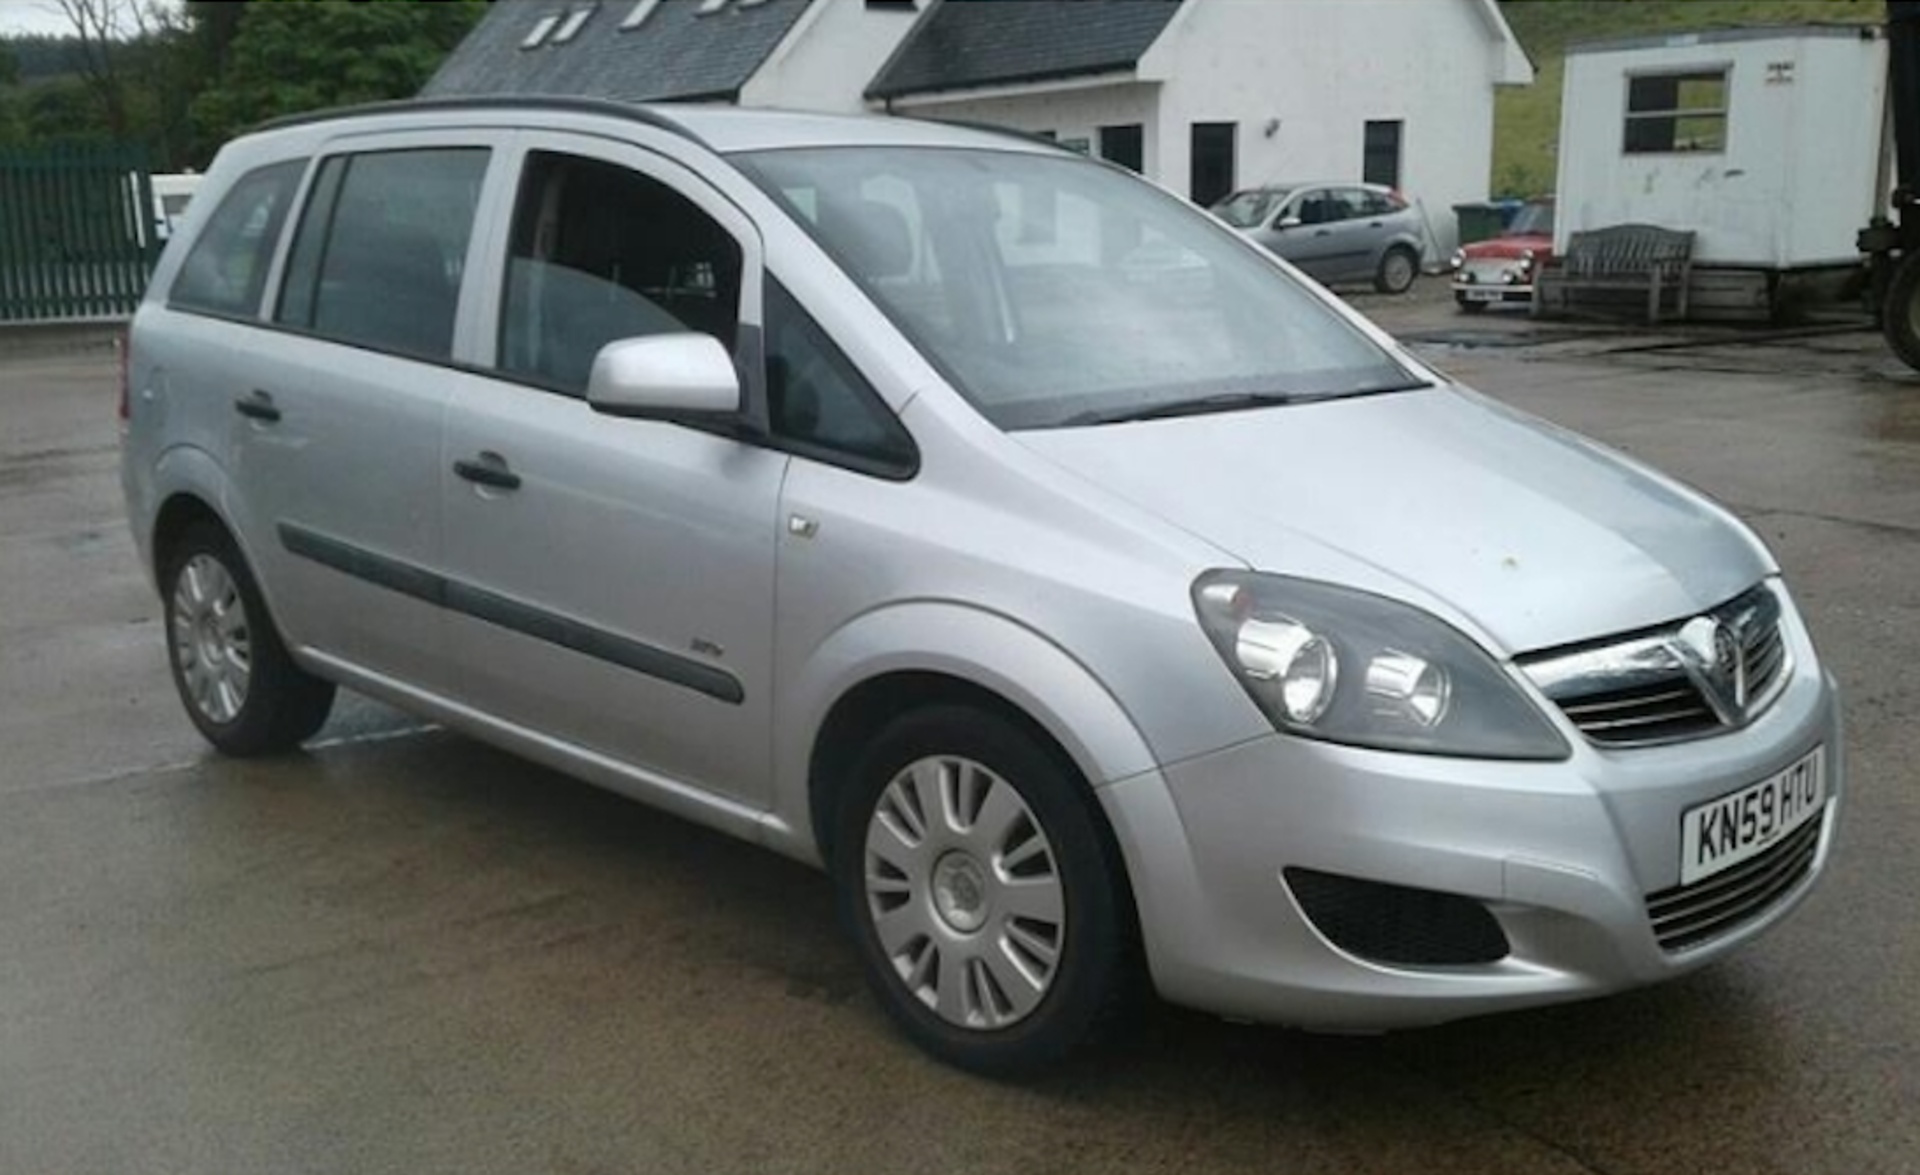 2009, Vauxhall Zafira - Image 2 of 5